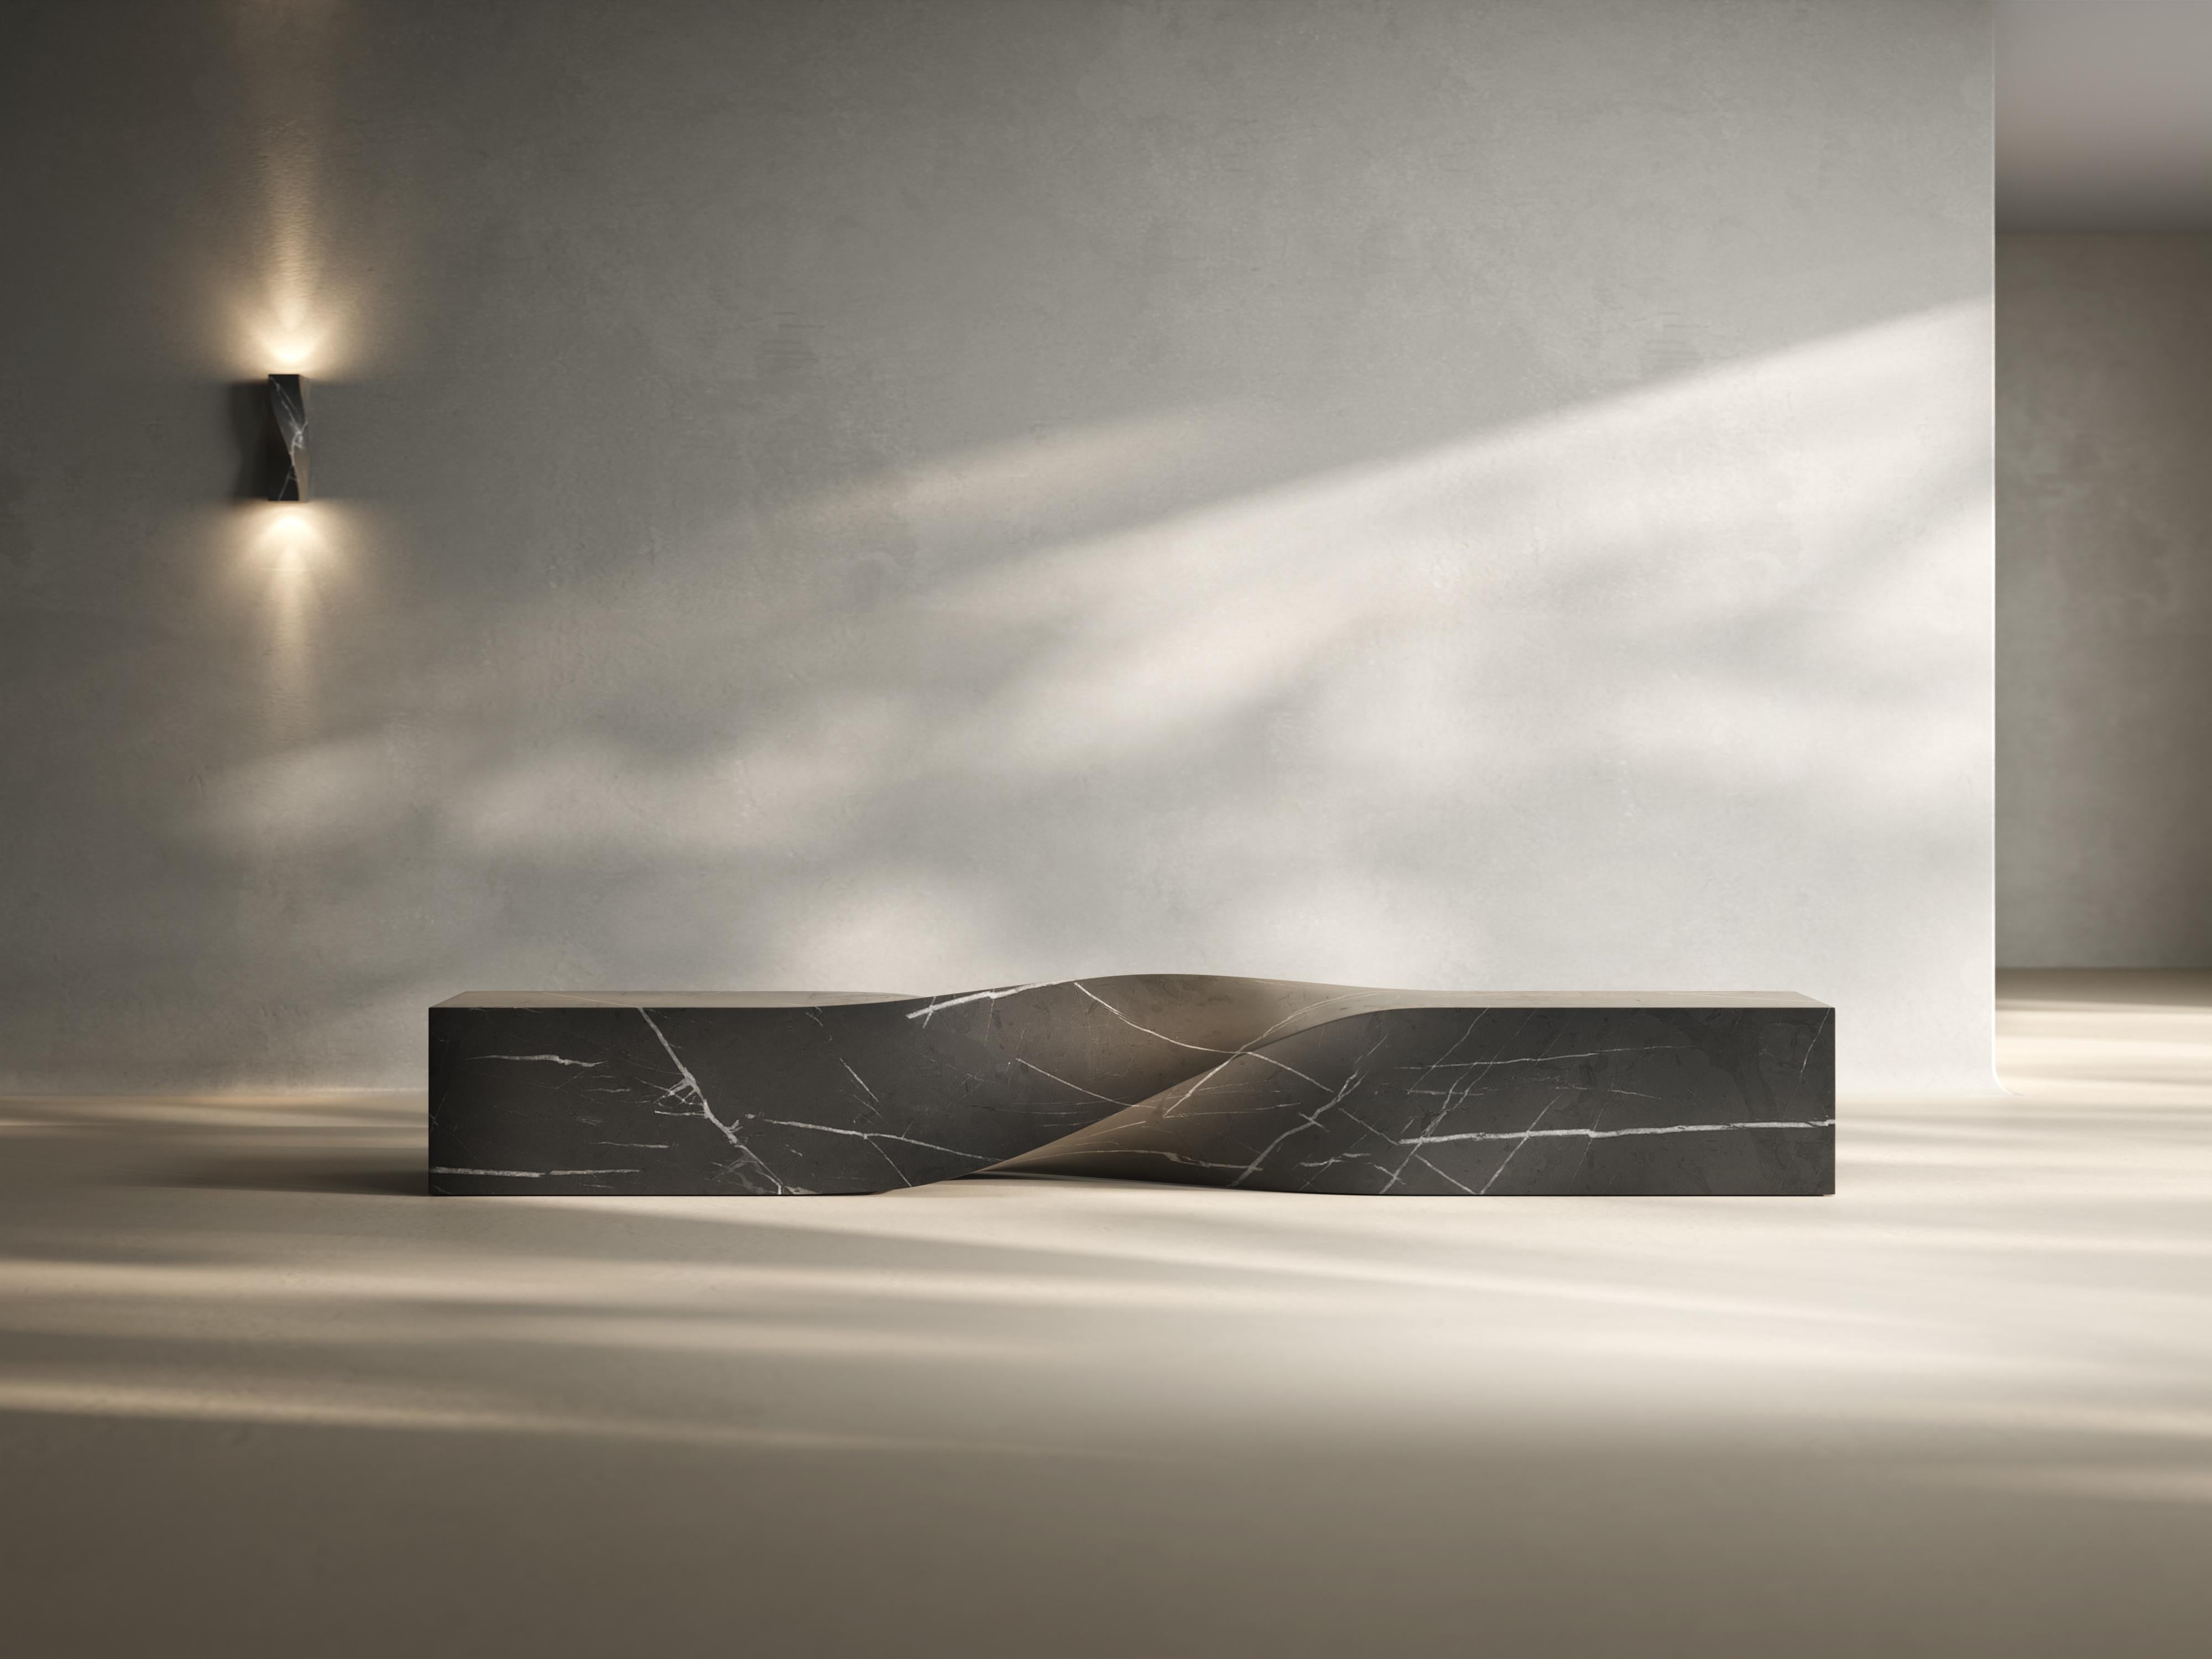 Soul sculpture marble bench medium by Veronica Marli
Dimensions : D 250 x L 57 x H 51 cm. SH : 45 cm.
MATERIAL : Macael vert marbré

Il est disponible en 2,5 mètres et 3 mètres de long, Made in KRION® en édition limitée. Les différentes couleurs de